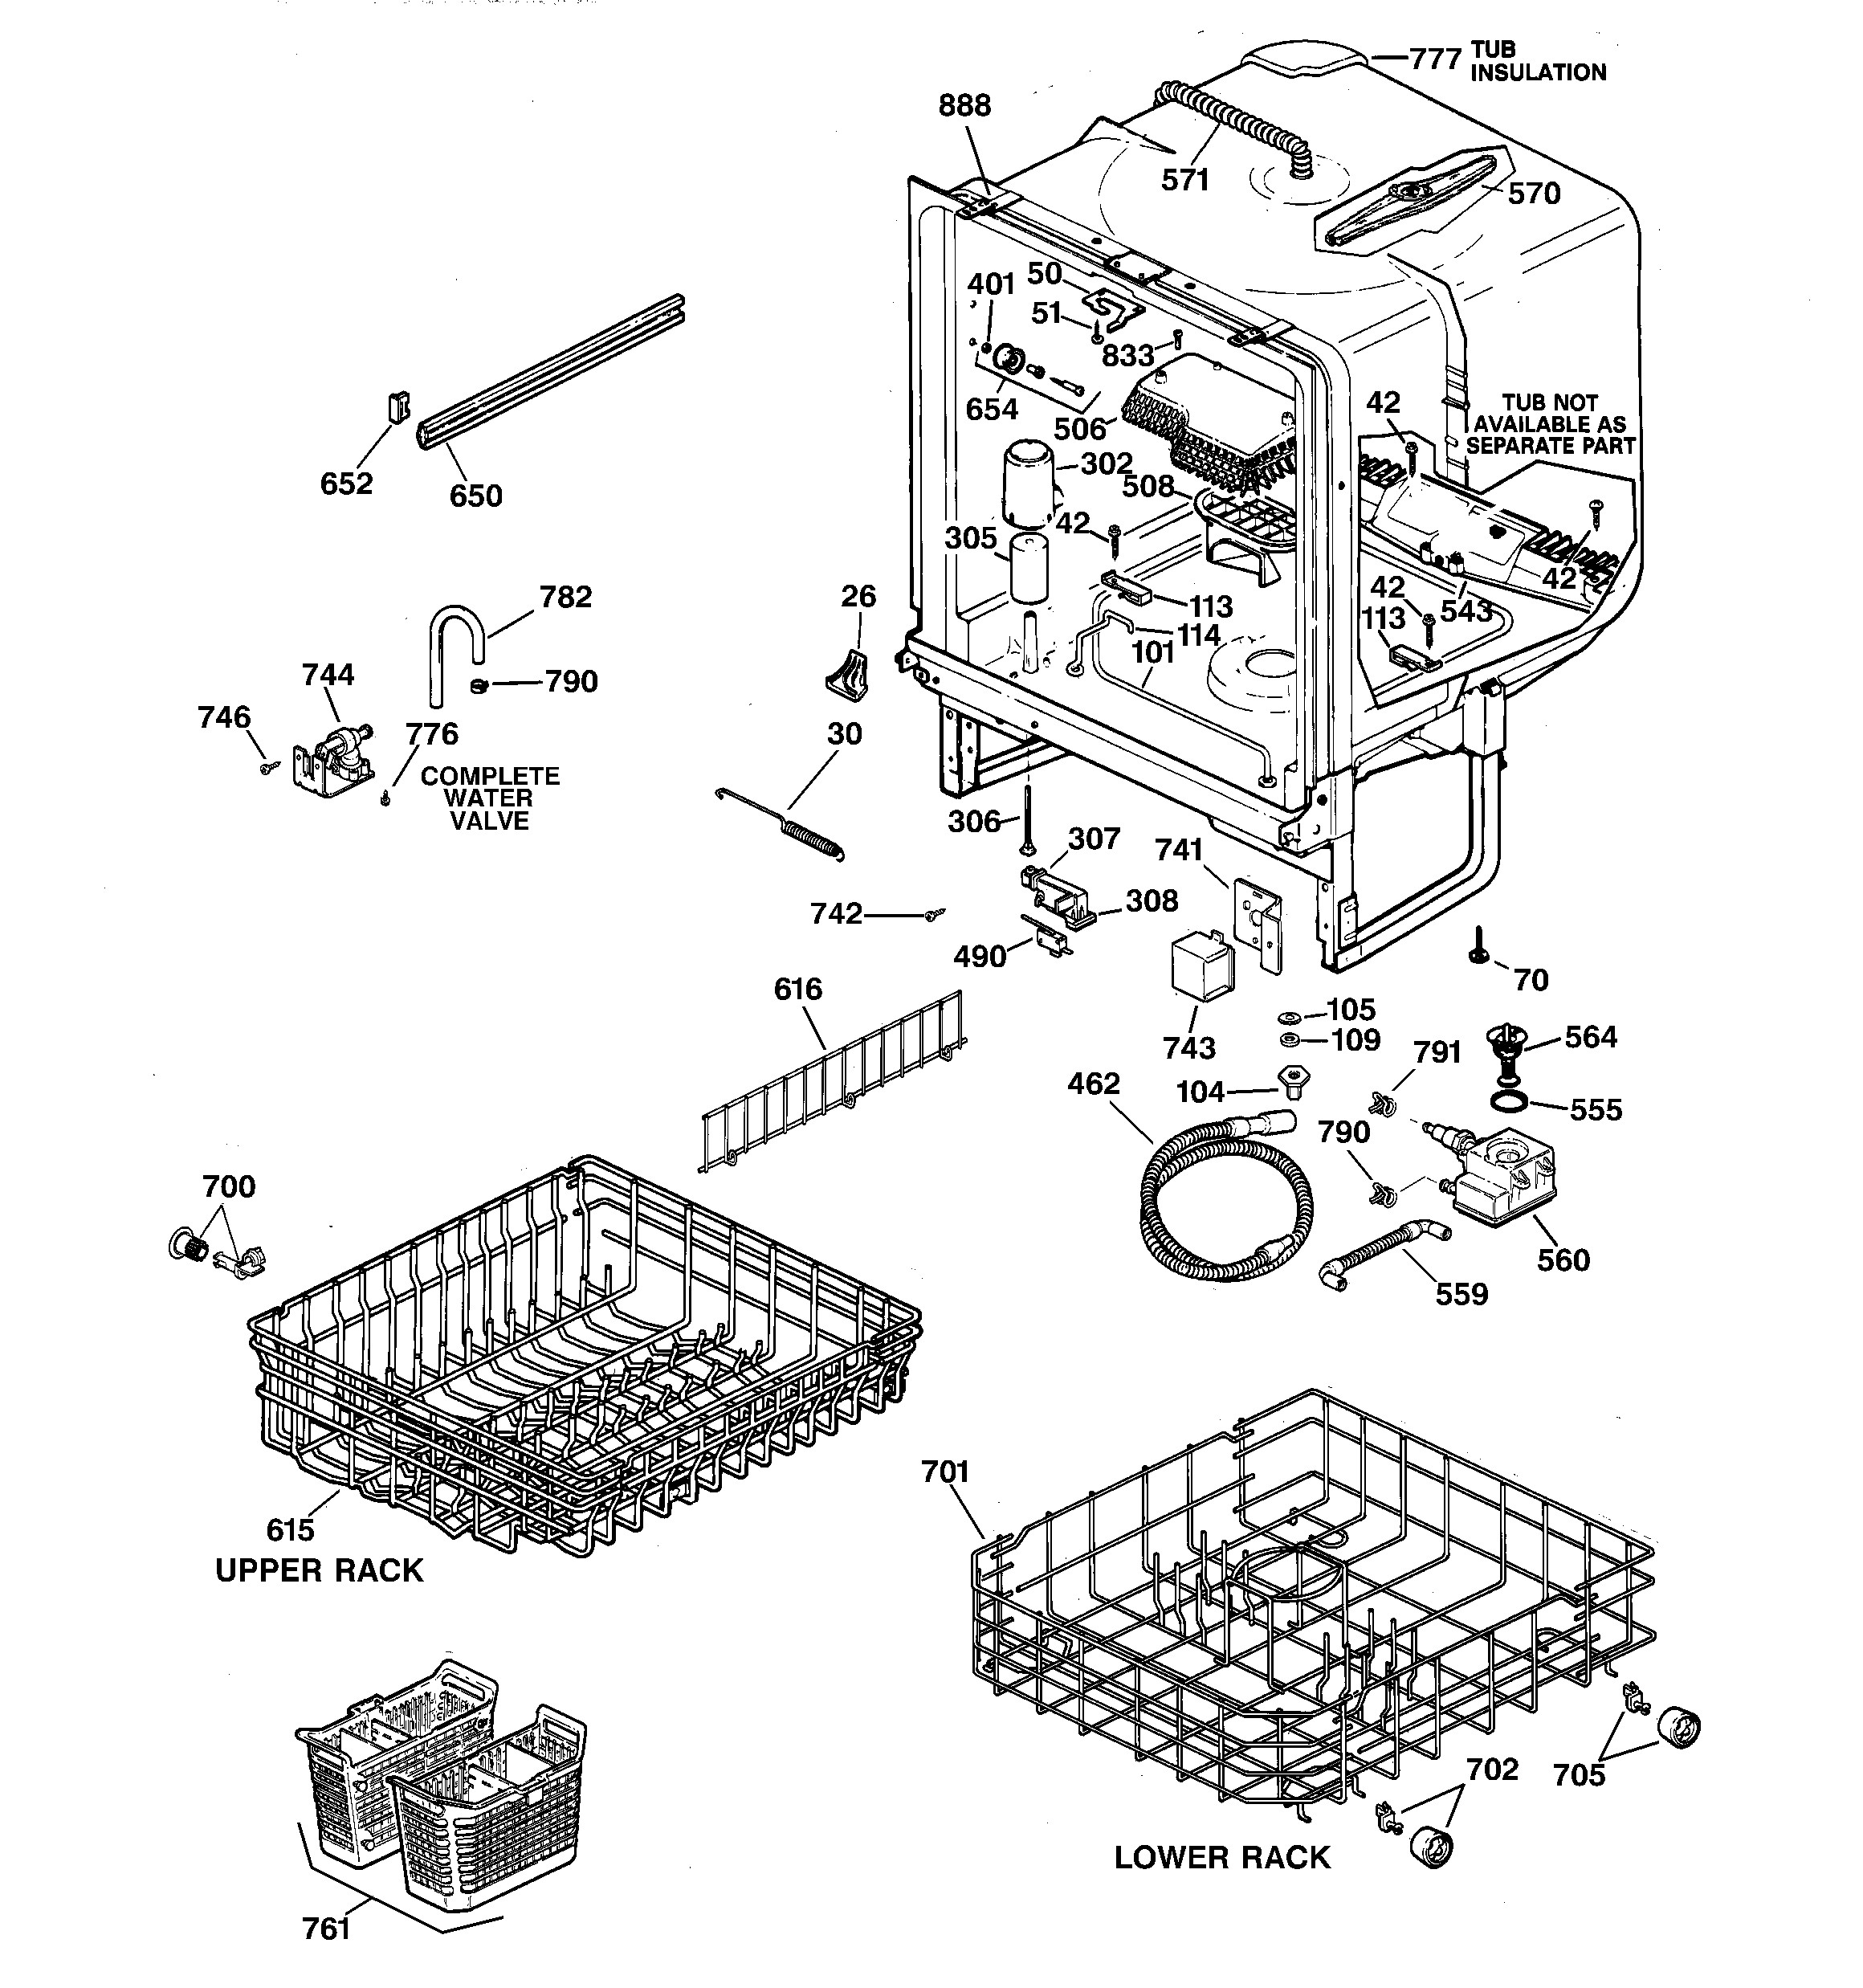 Ge Nautilus Dishwasher Parts Diagram Ge Model Gsd3600g00cc Dishwasher Genuine Parts Of Ge Nautilus Dishwasher Parts Diagram